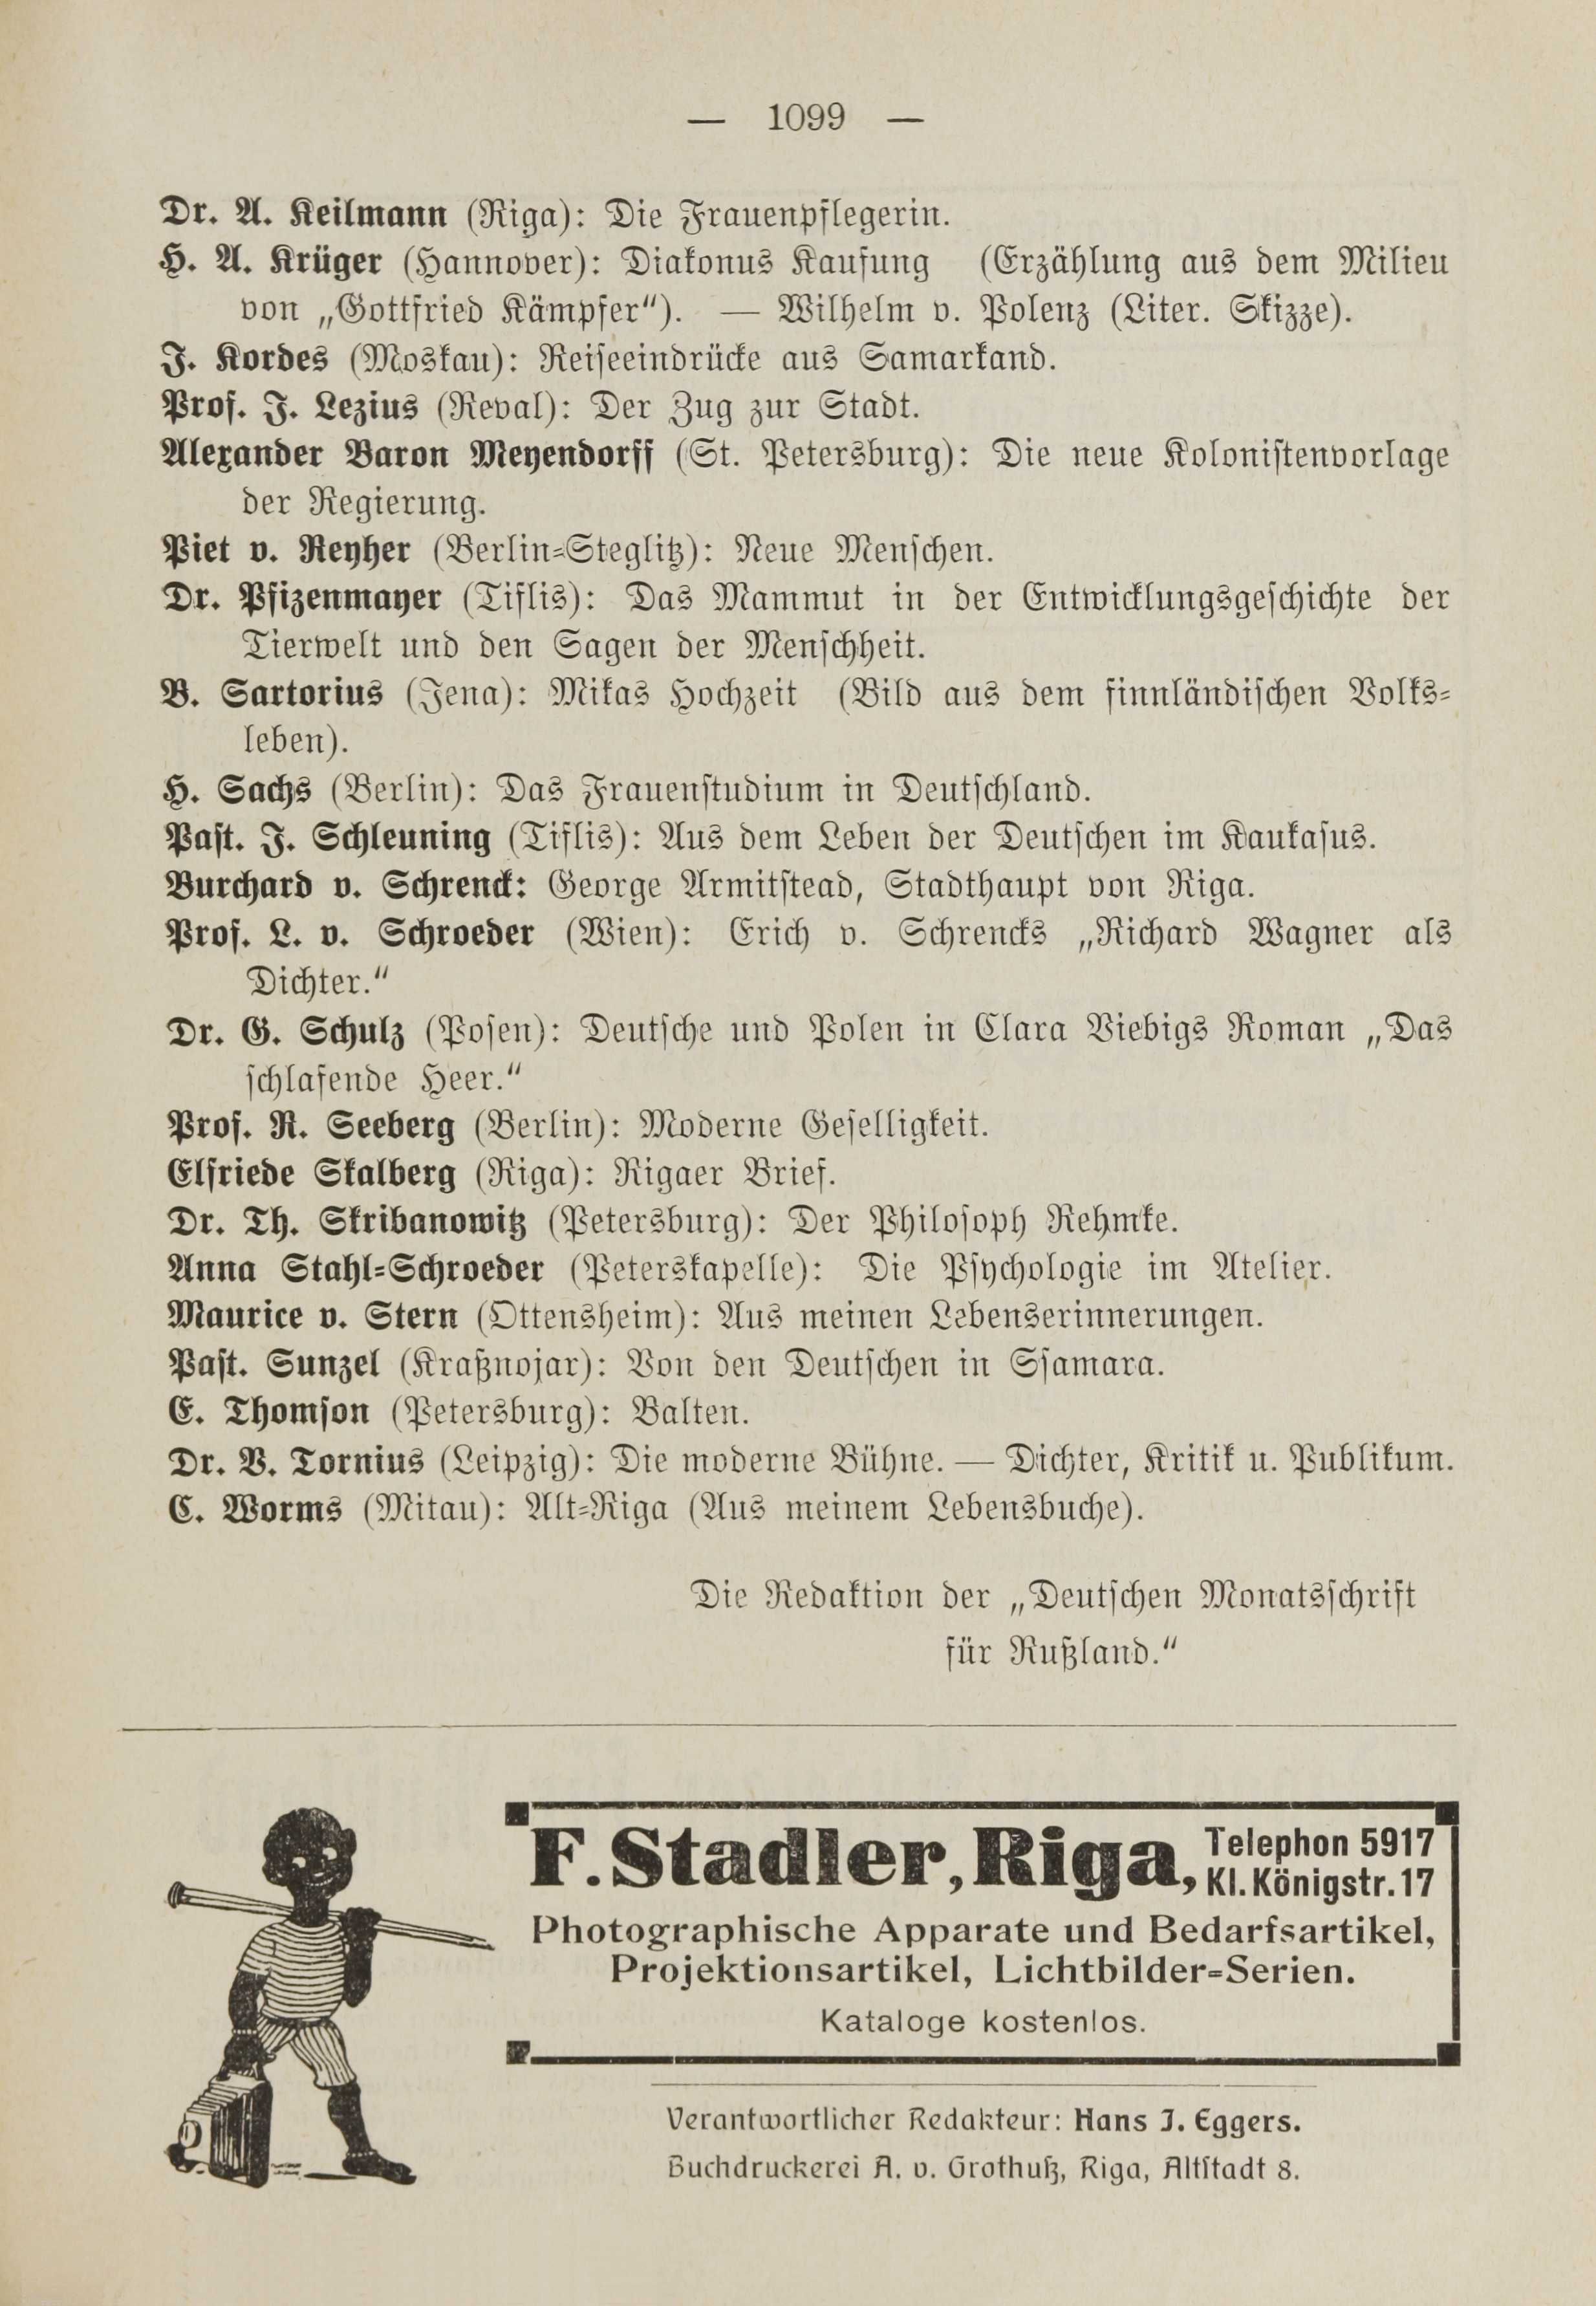 Deutsche Monatsschrift für Russland [1] (1912) | 1107. (1099) Haupttext